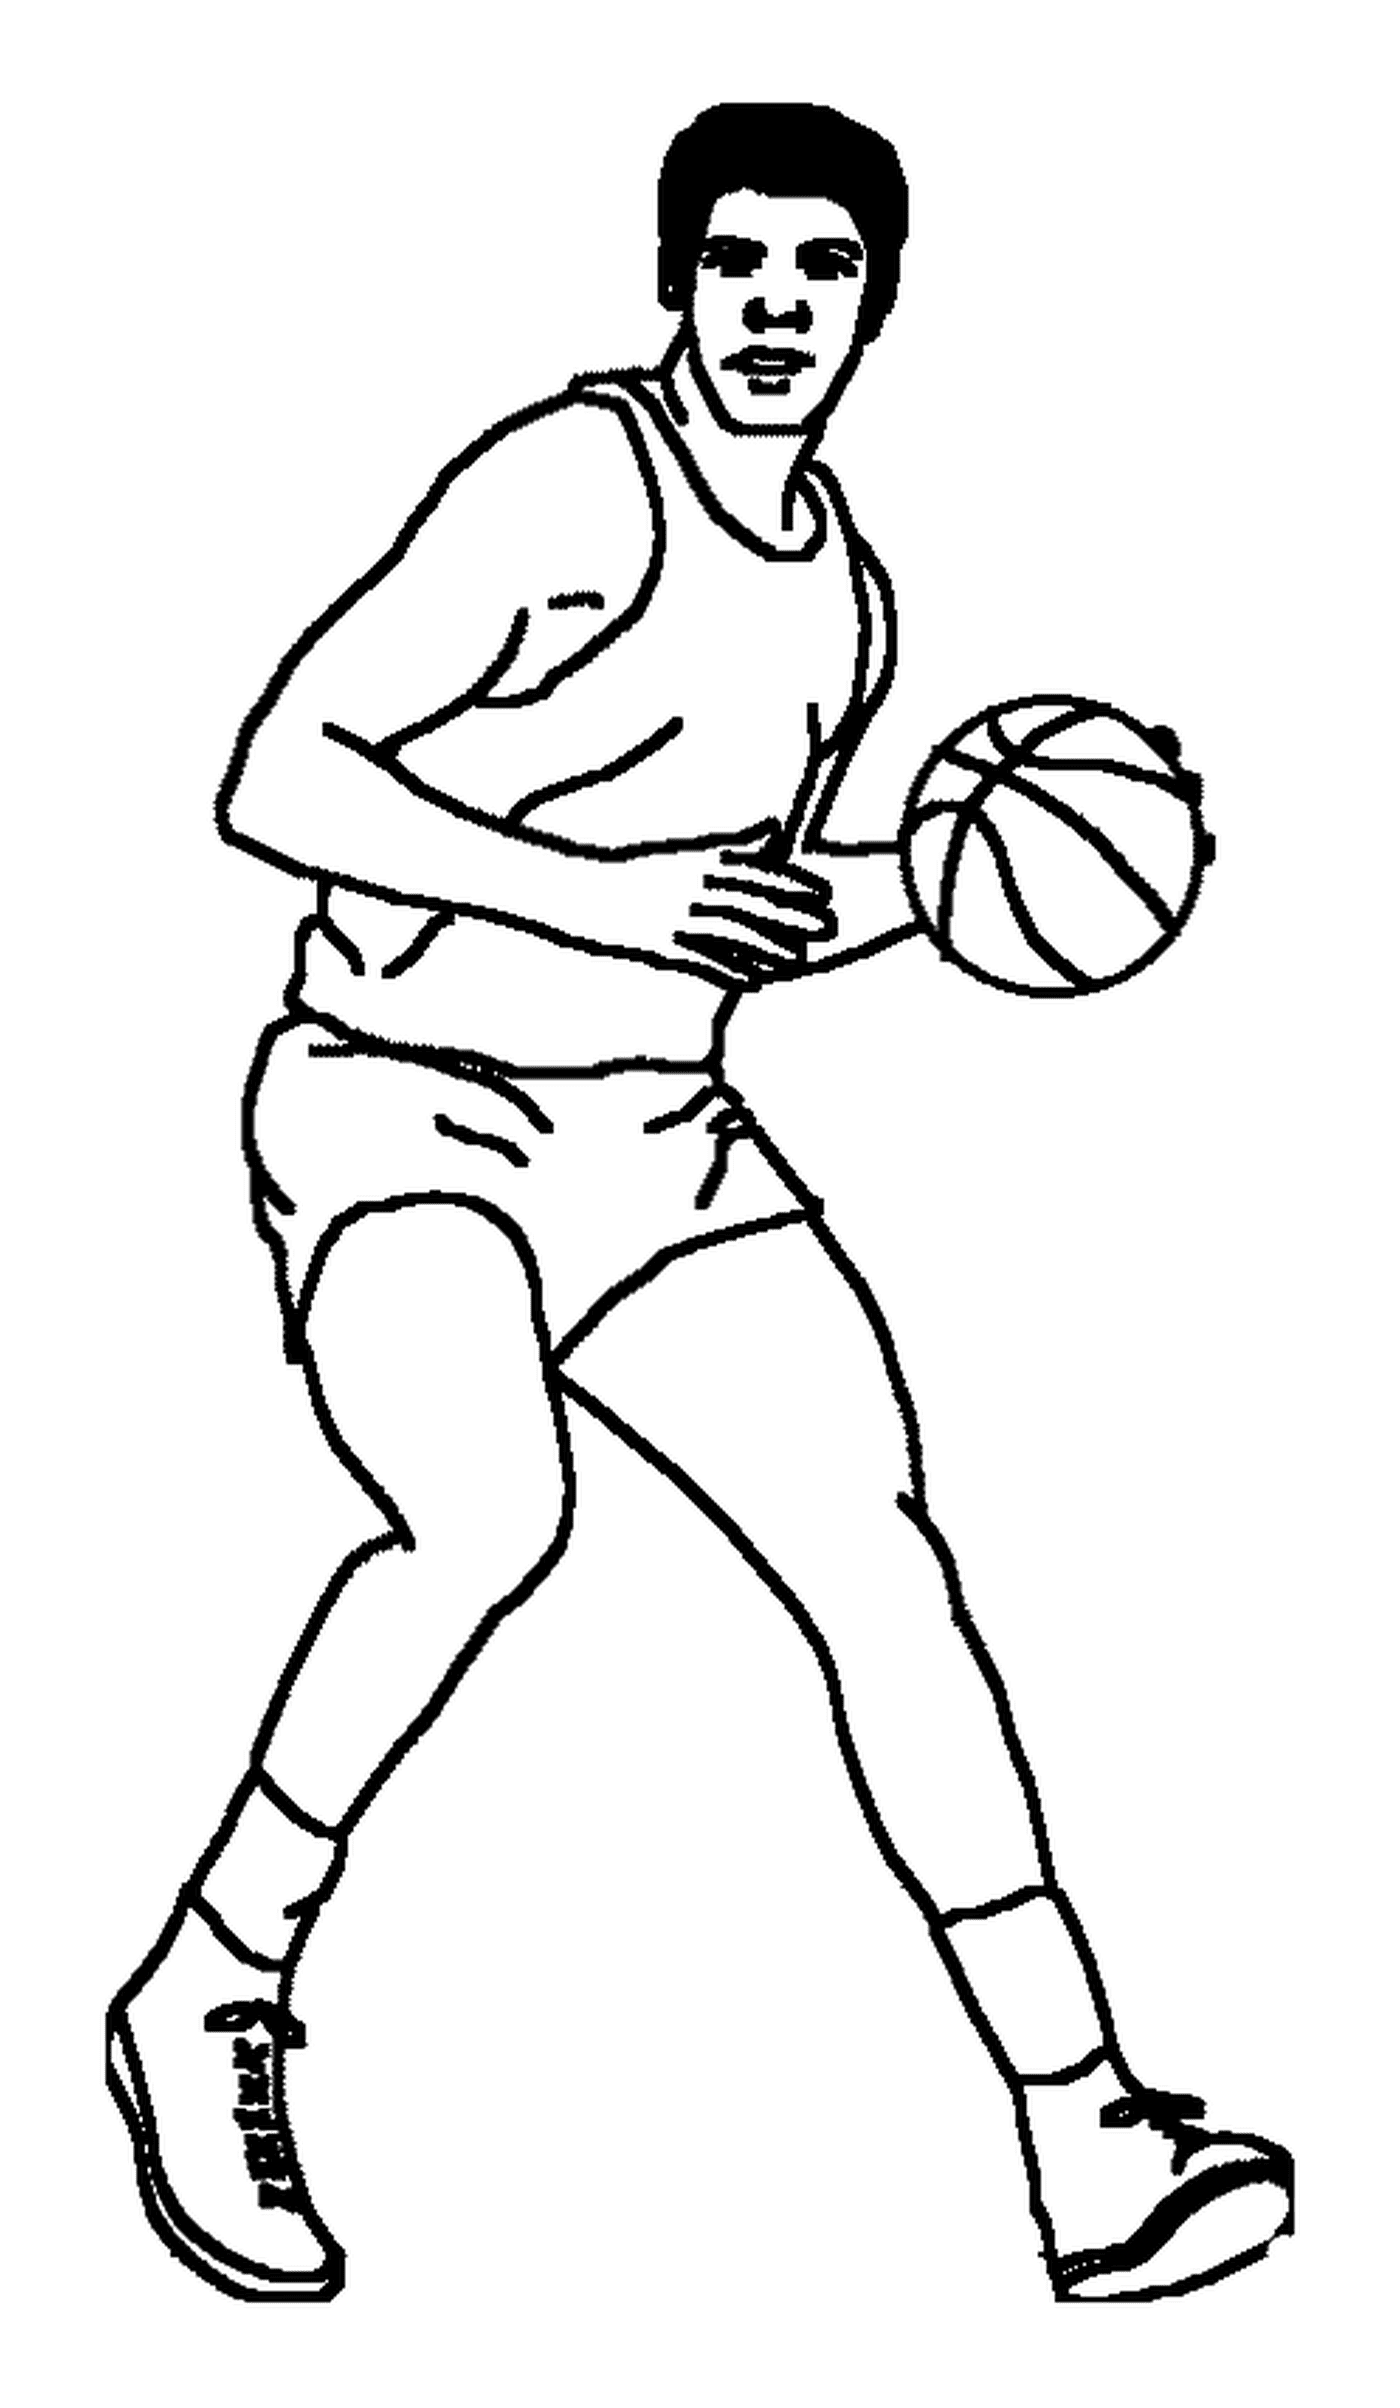   Un joueur de basketball avec un ballon 